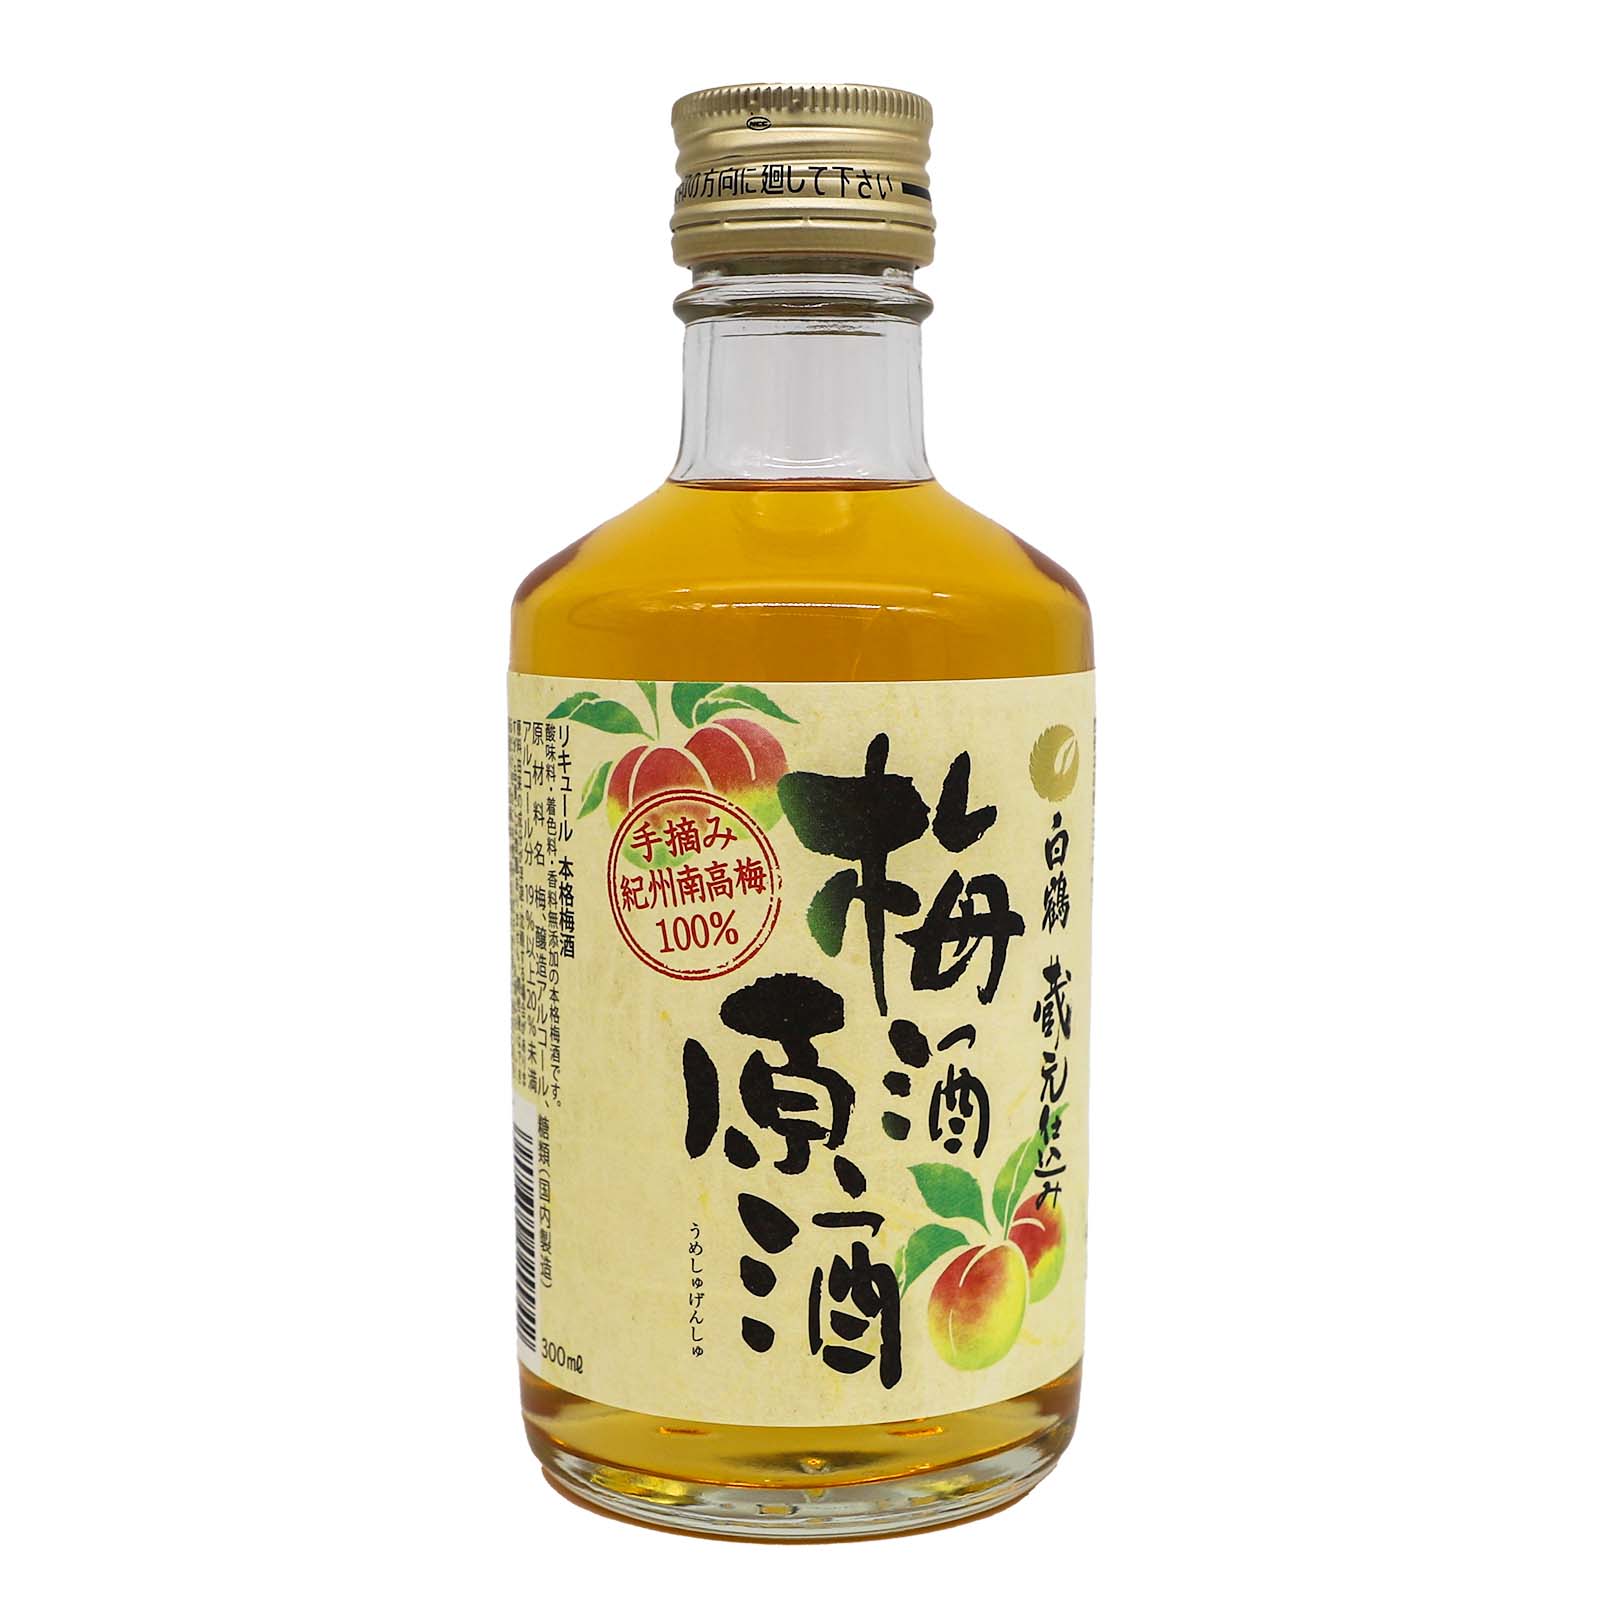 Hakutsuru Umeshu Genshu Binzume Plum Wine Sake